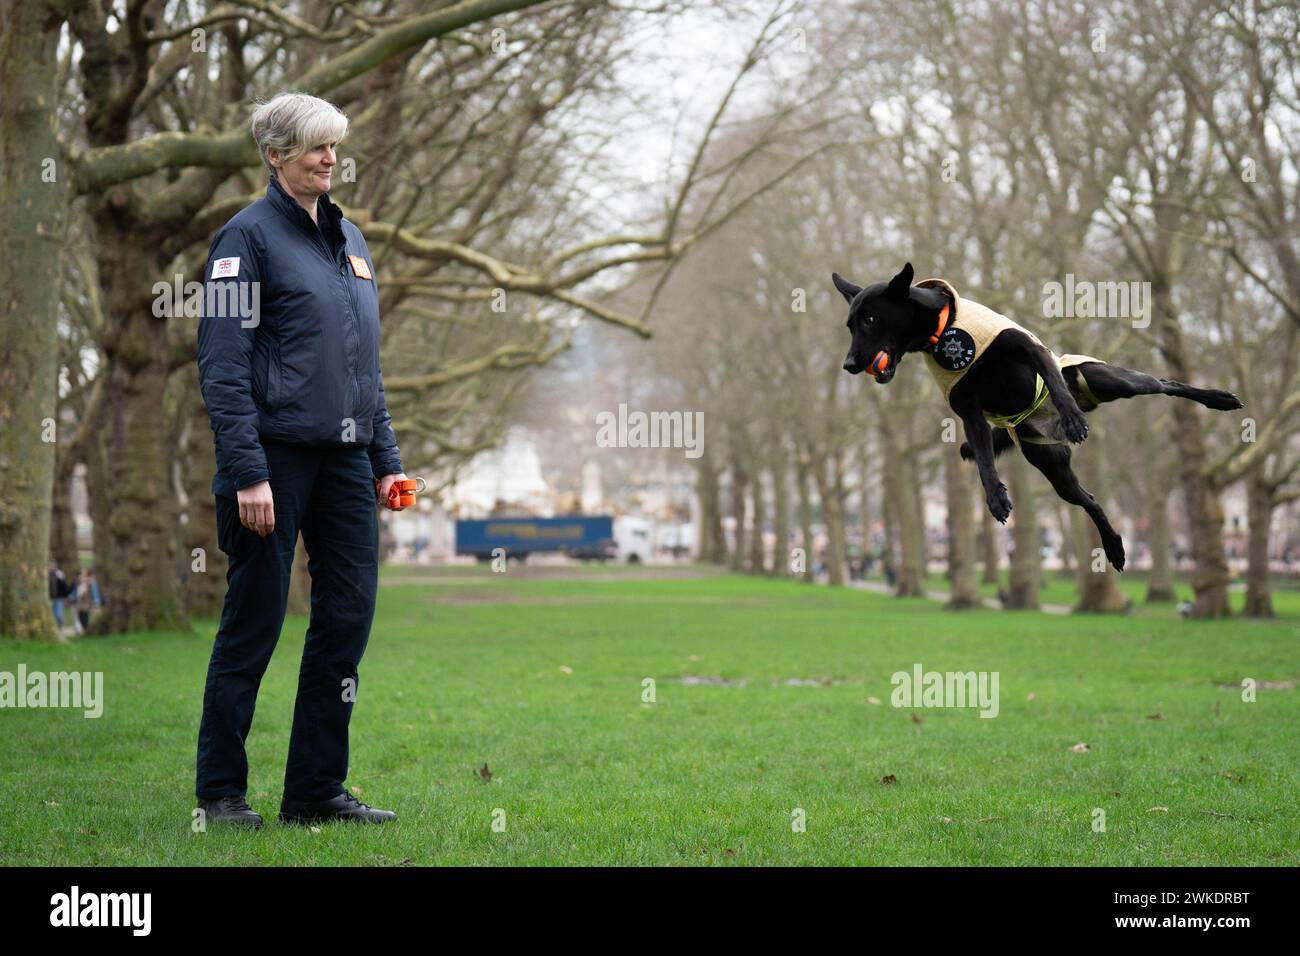 Finalistin des Crufts Canine Held Award, Such- und Rettungshund Vesper a Belgischer Malinois mit ihrem Hundeführer Niamh Darcy, bei einem Launch Event für Crufts 2024 in Green Park, London. Bilddatum: Dienstag, 20. Februar 2024. Stockfoto